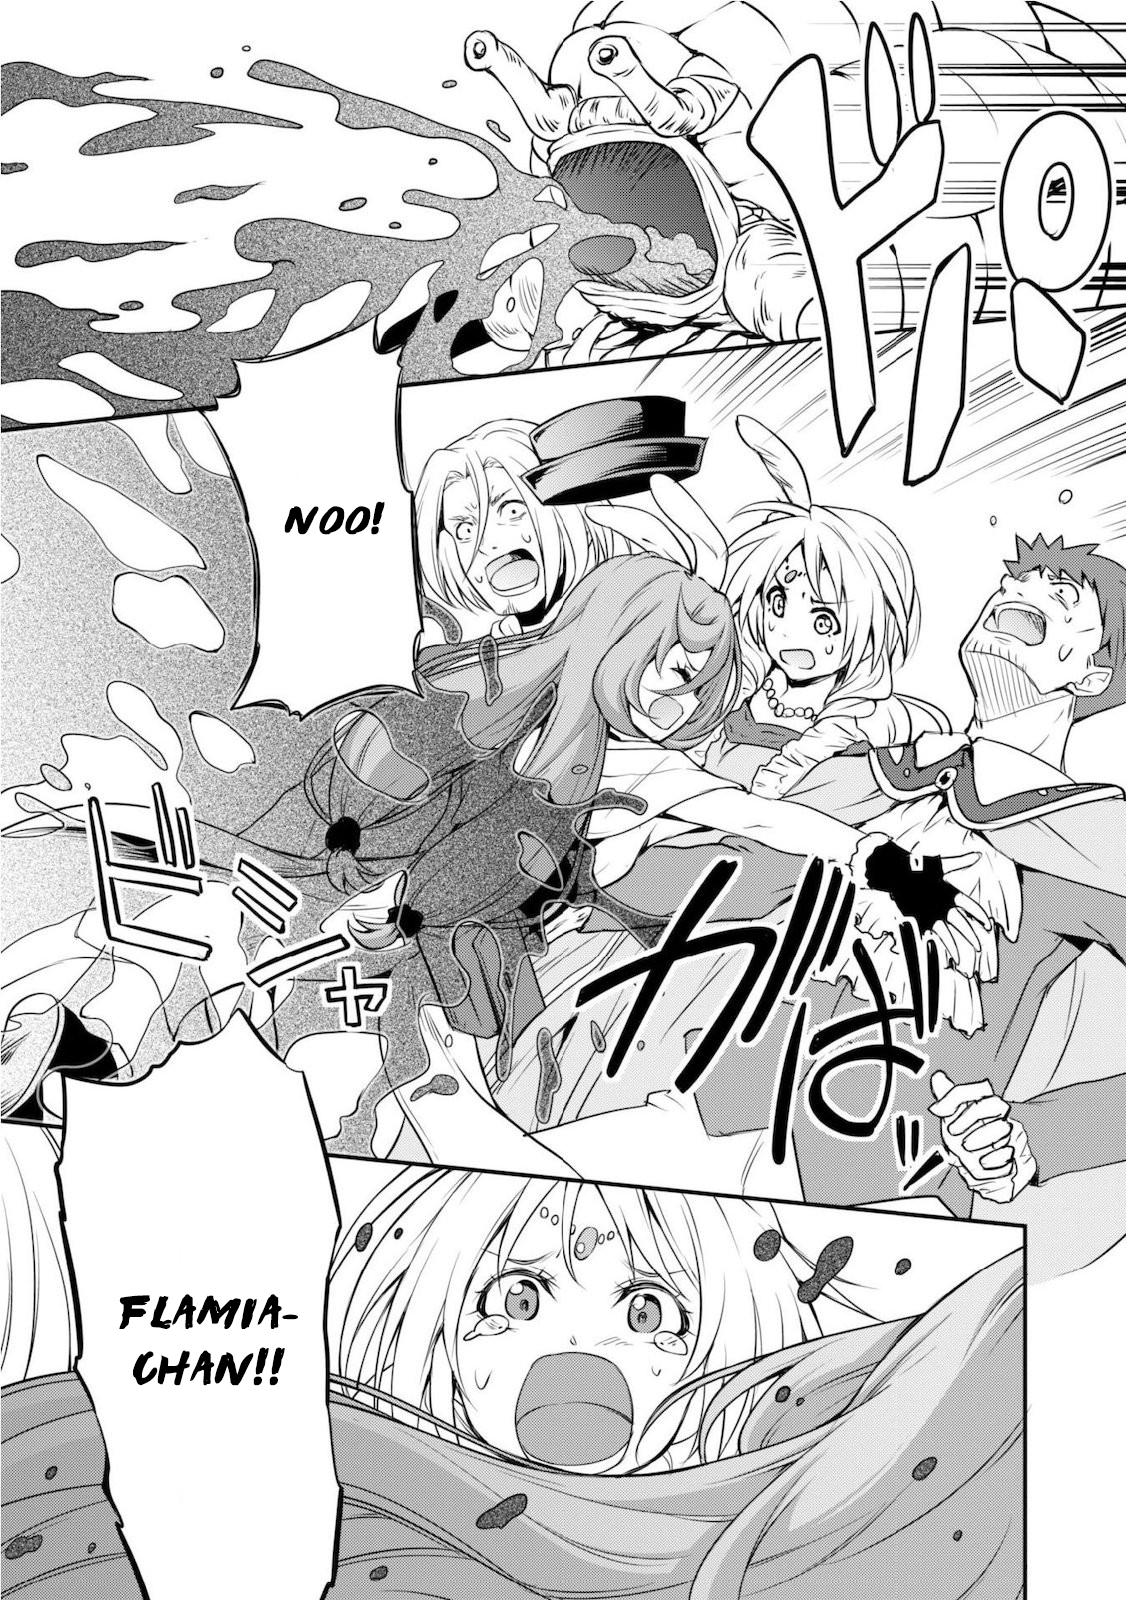 Tensei Shitara Slime Datta Ken: Mamono no Kuni no Arukikata Vol. 1 Ch. 4